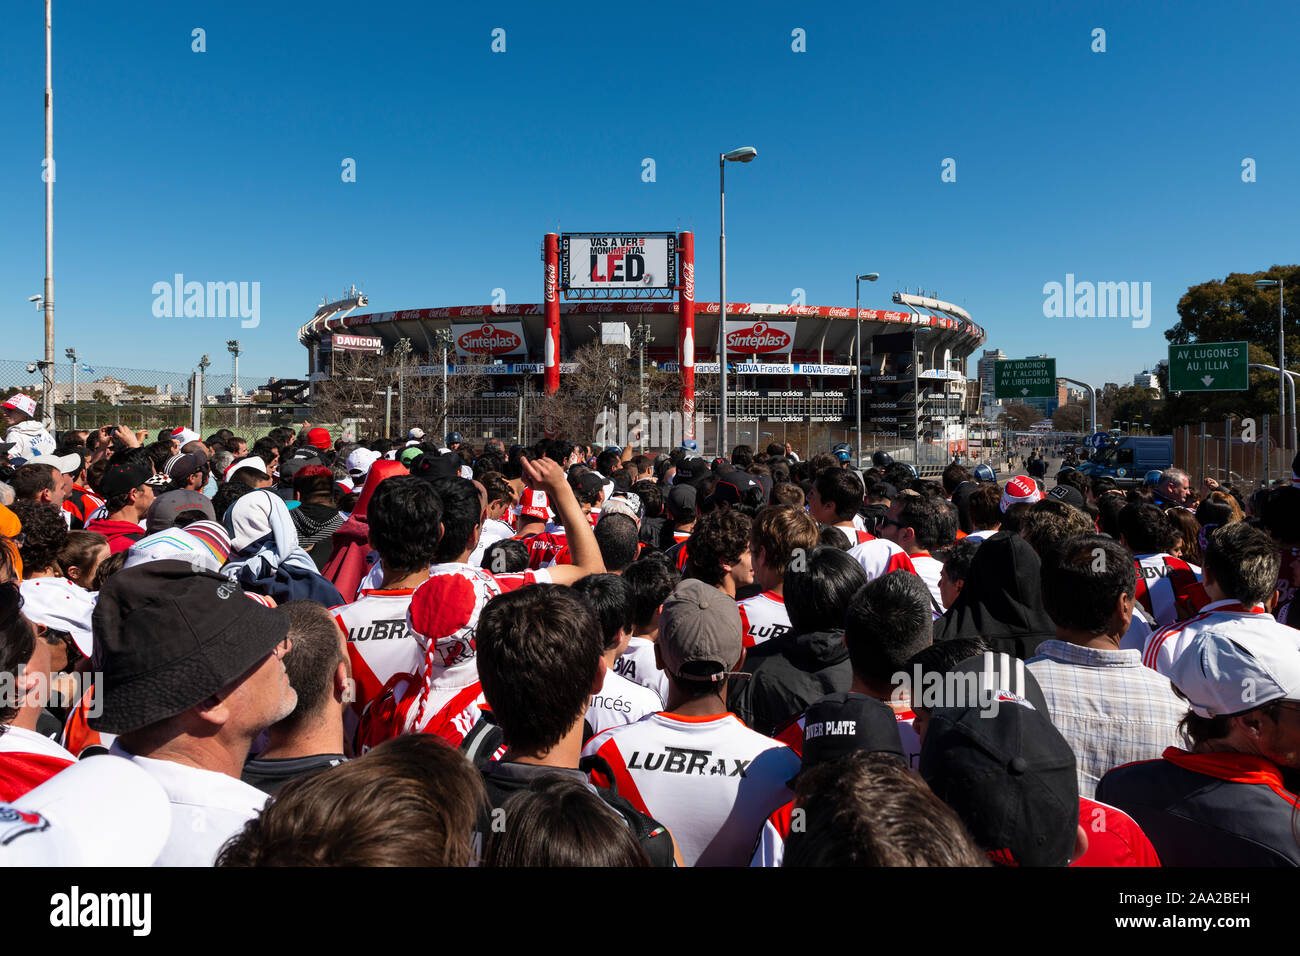 Buenos Aires, Argentinien - Oktober 6, 2013: River Plate Anhänger warten das Estadio Monumental Antonio Vespucio Liberti für ein Fußball-Spiel in t eingeben Stockfoto